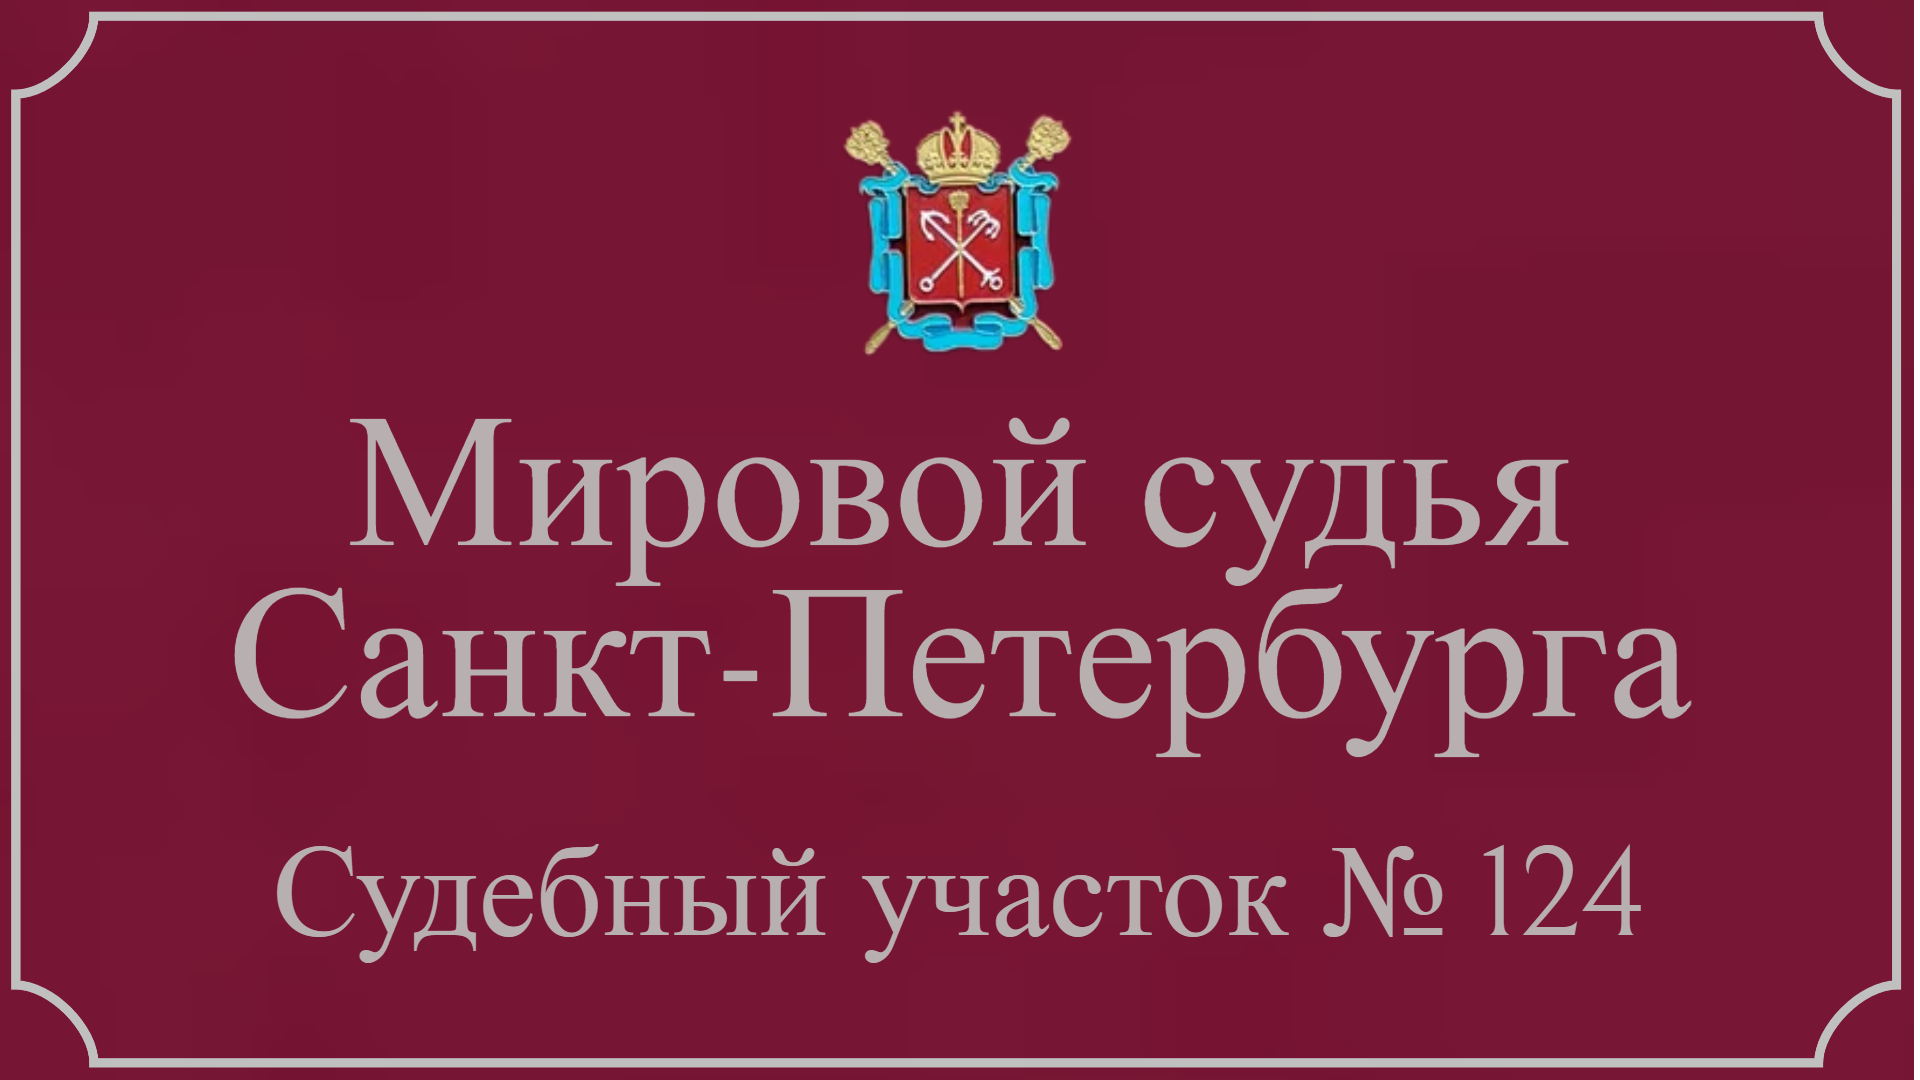 Информация по 124 судебному участку в Санкт-Петербурге.